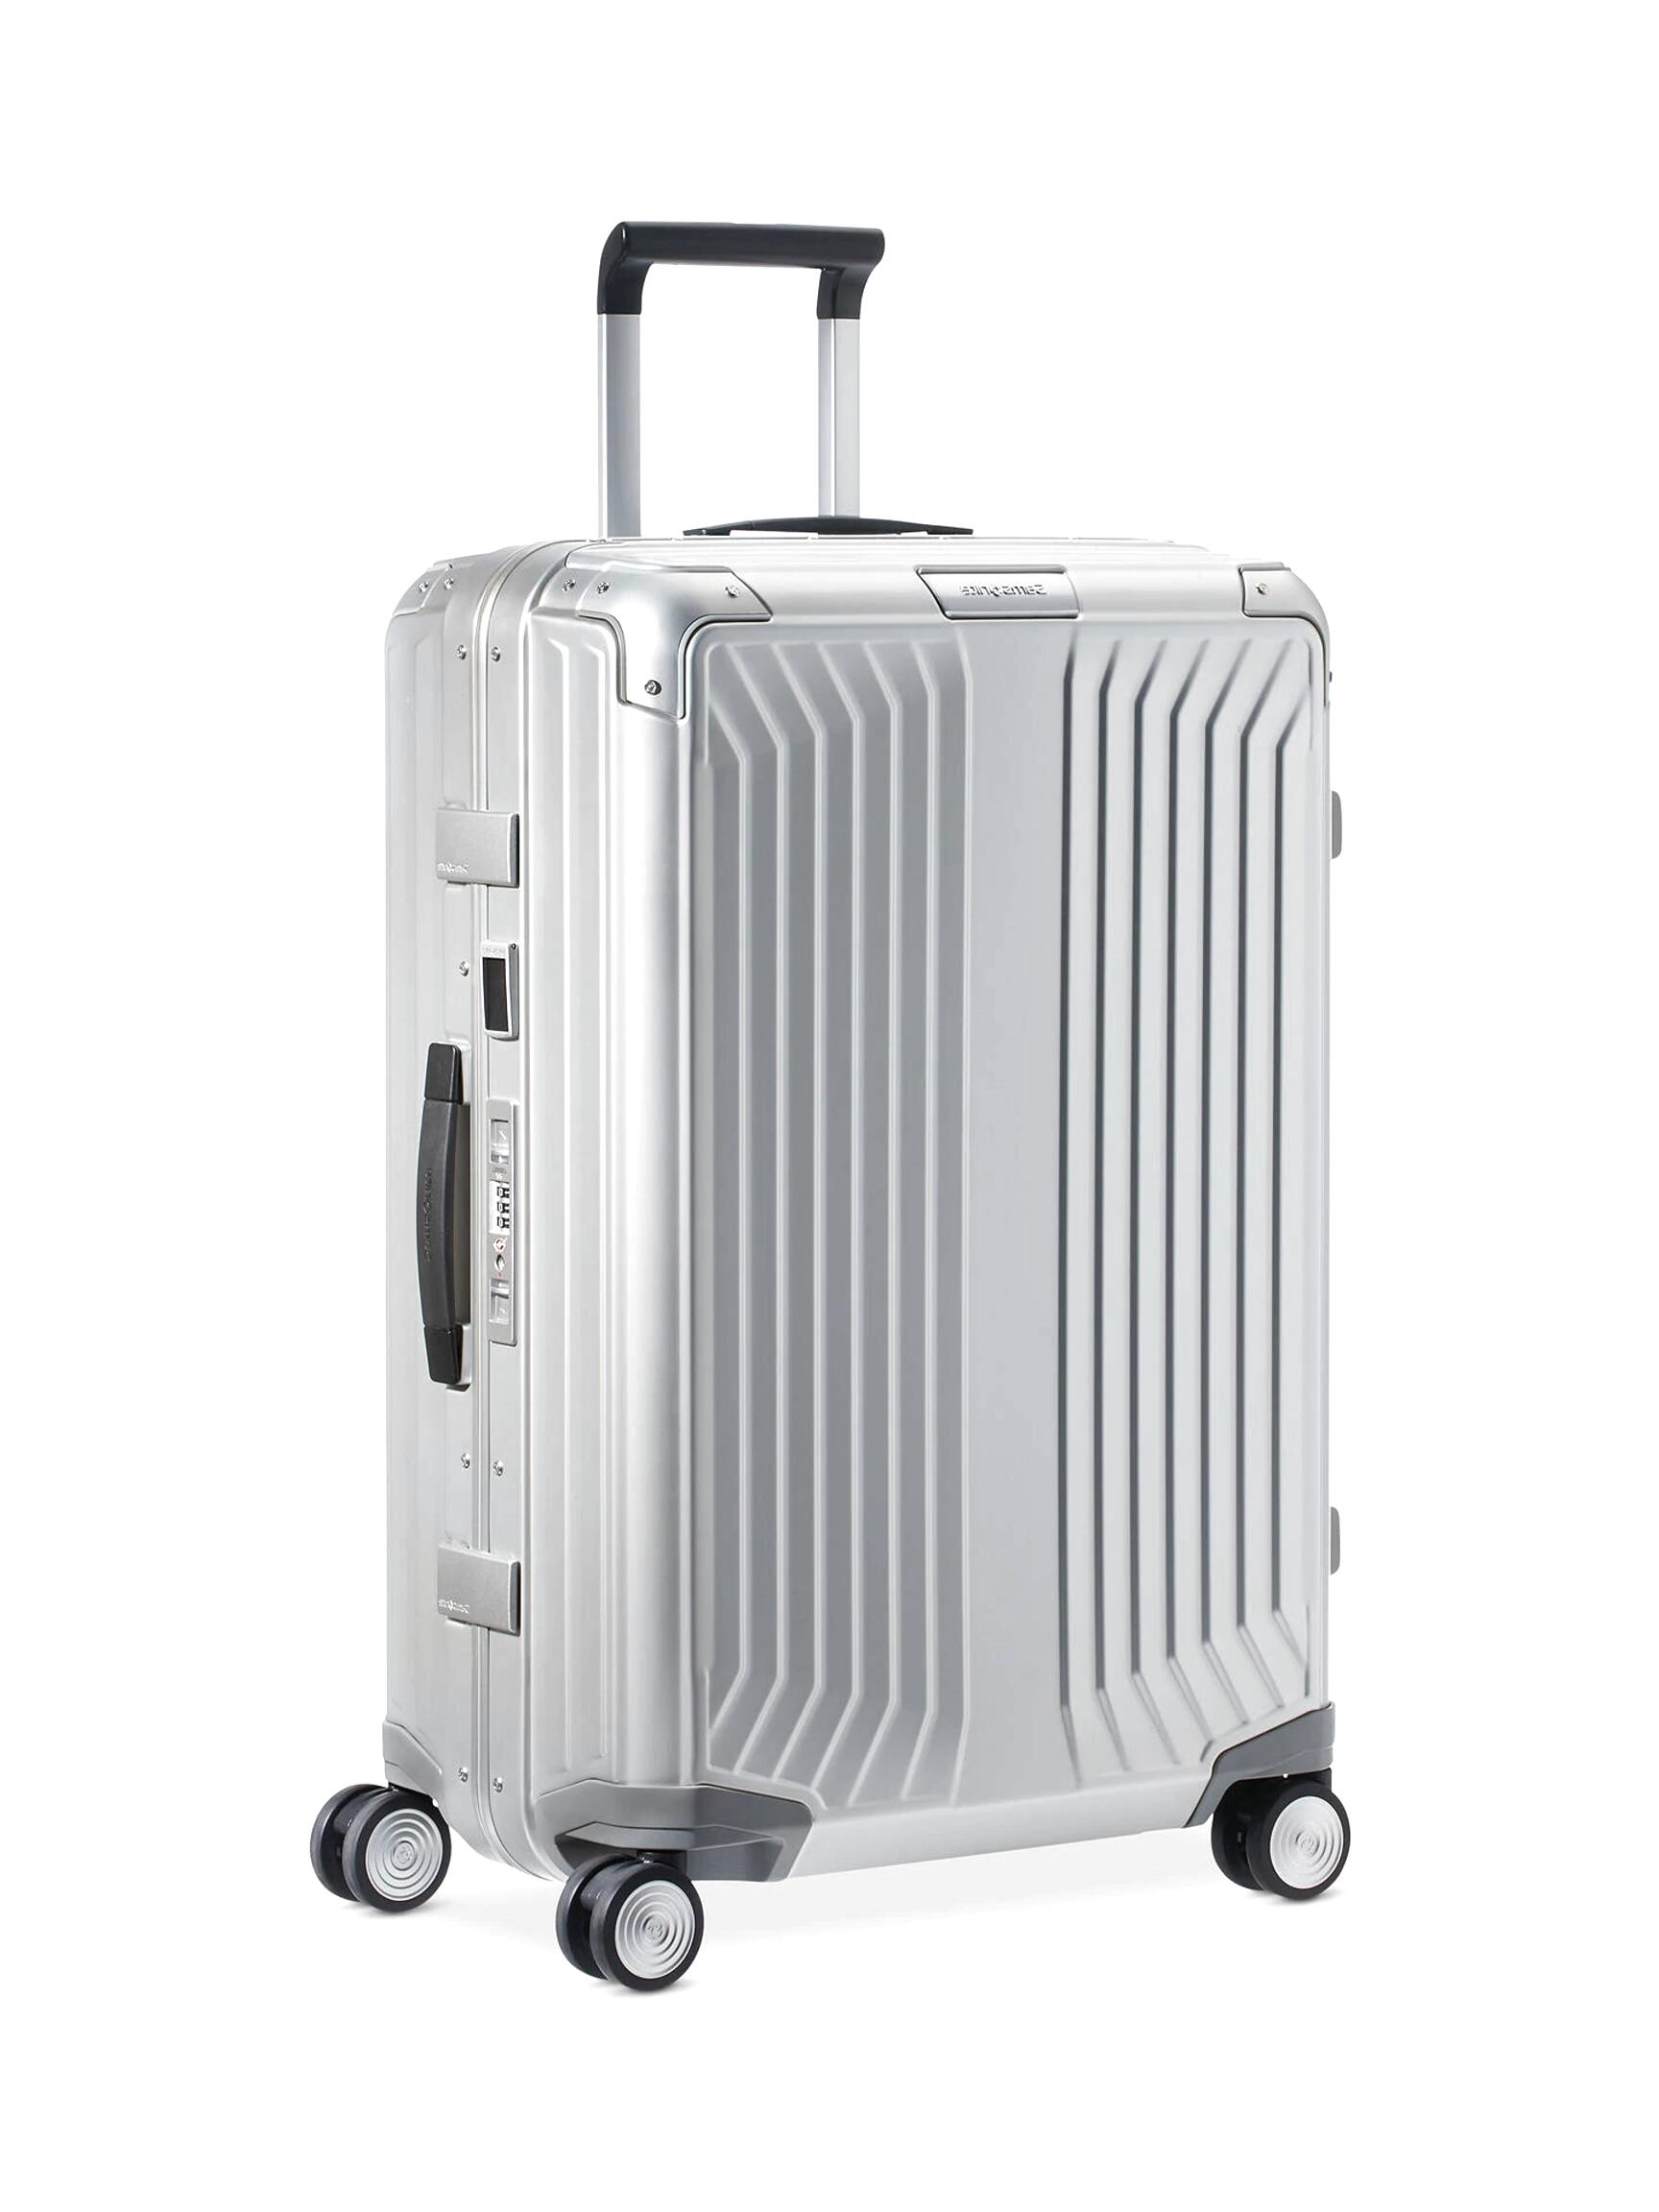 Aluminium Suitcase for sale in UK | 56 used Aluminium Suitcases